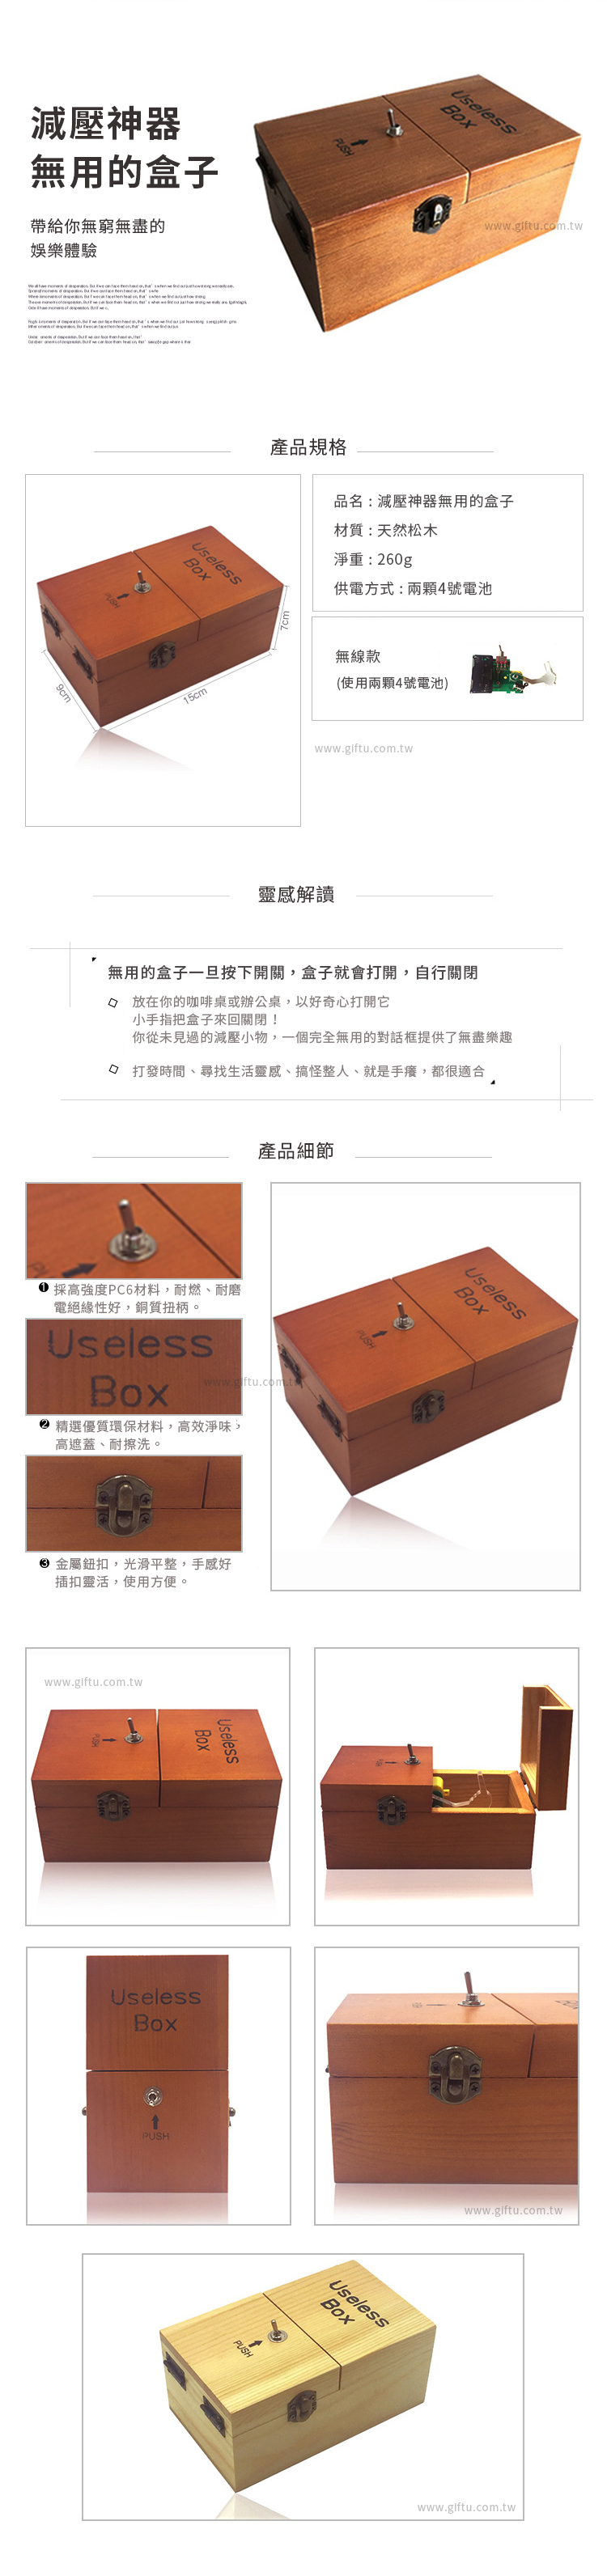 【3/29~5/31畢業季88折優惠】創意小物館 減壓神器無用的盒子 Useless Box 粉色